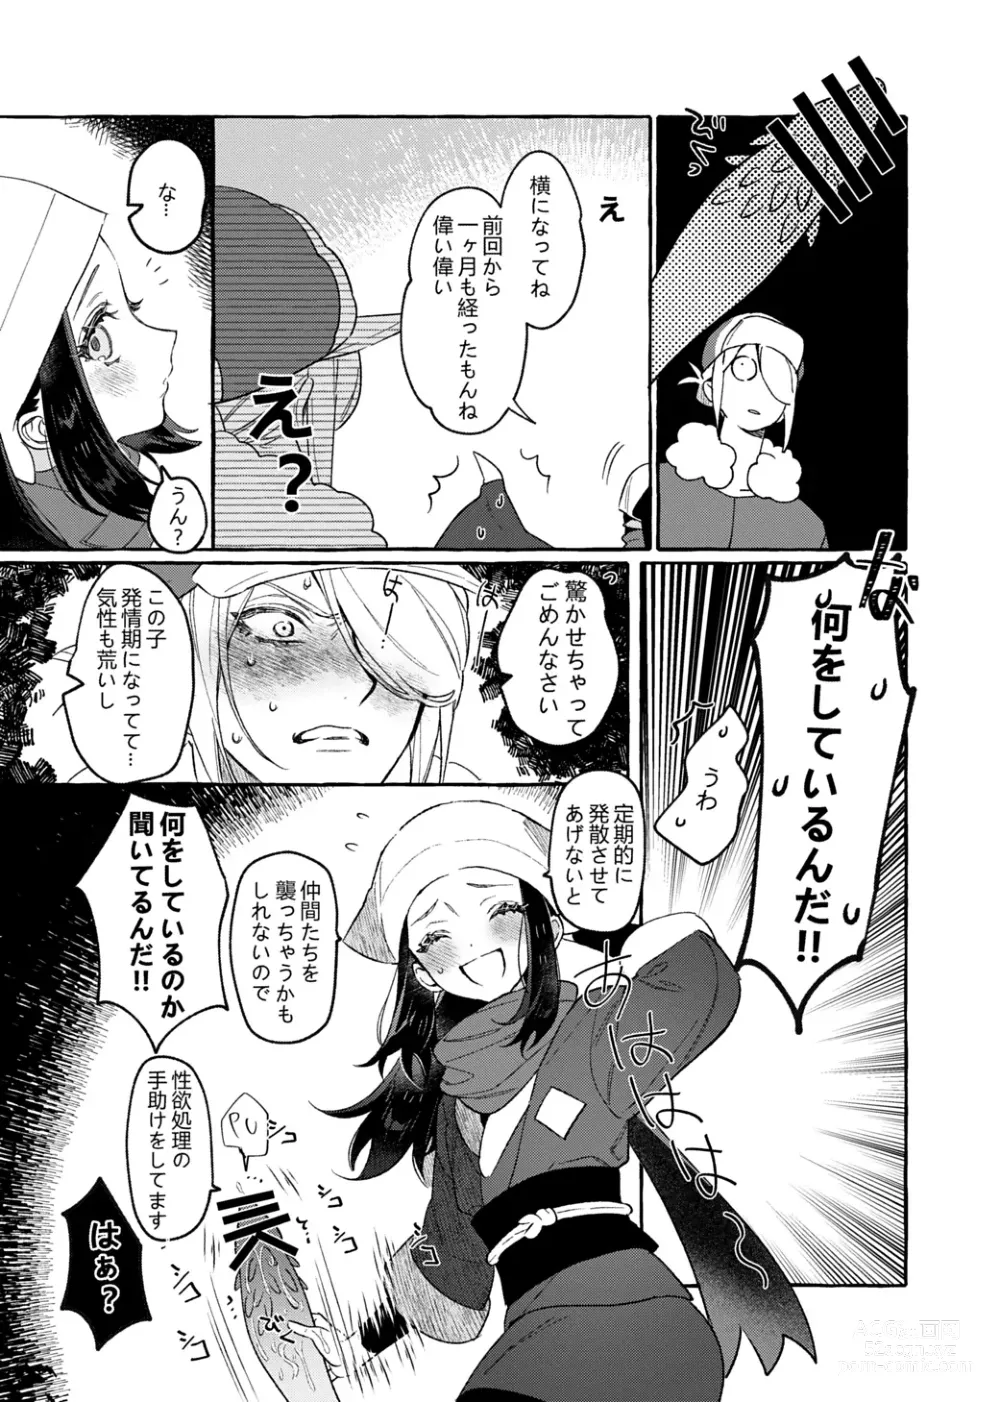 Page 6 of doujinshi Yosomono no Kuse ni